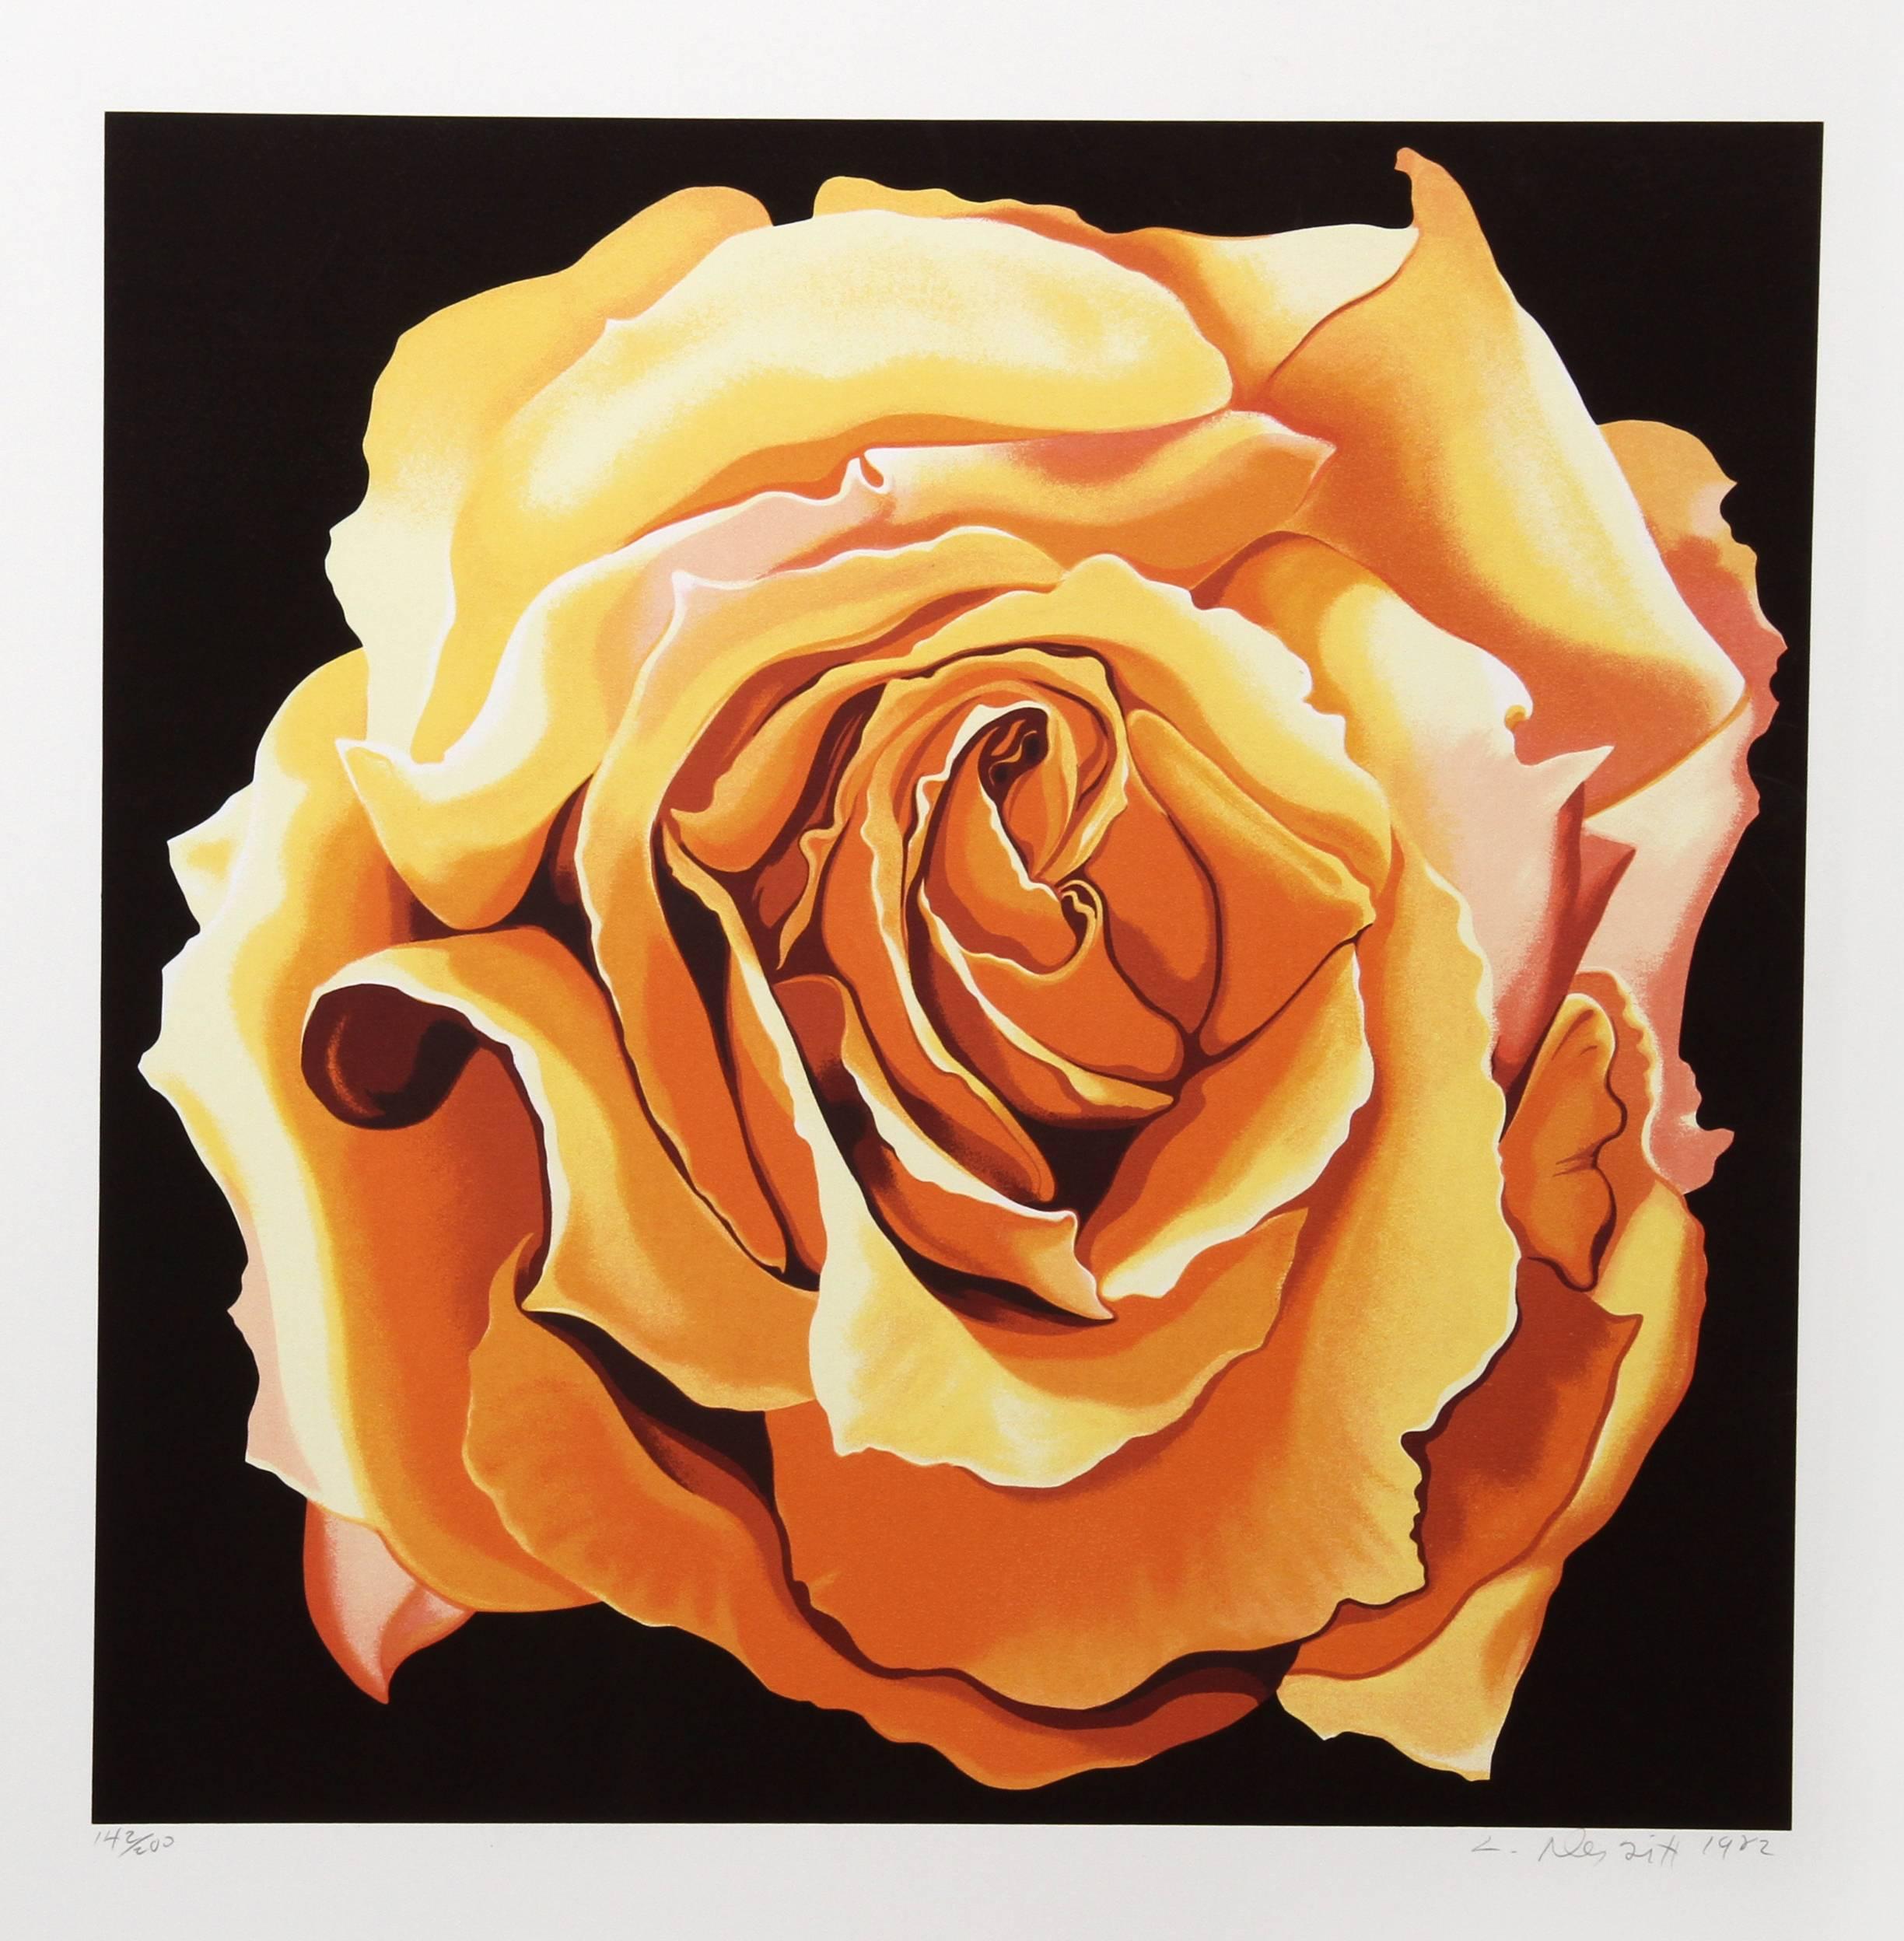 Gelbe gelbe Rose, fotorealistischer Druck von Lowell Nesbitt